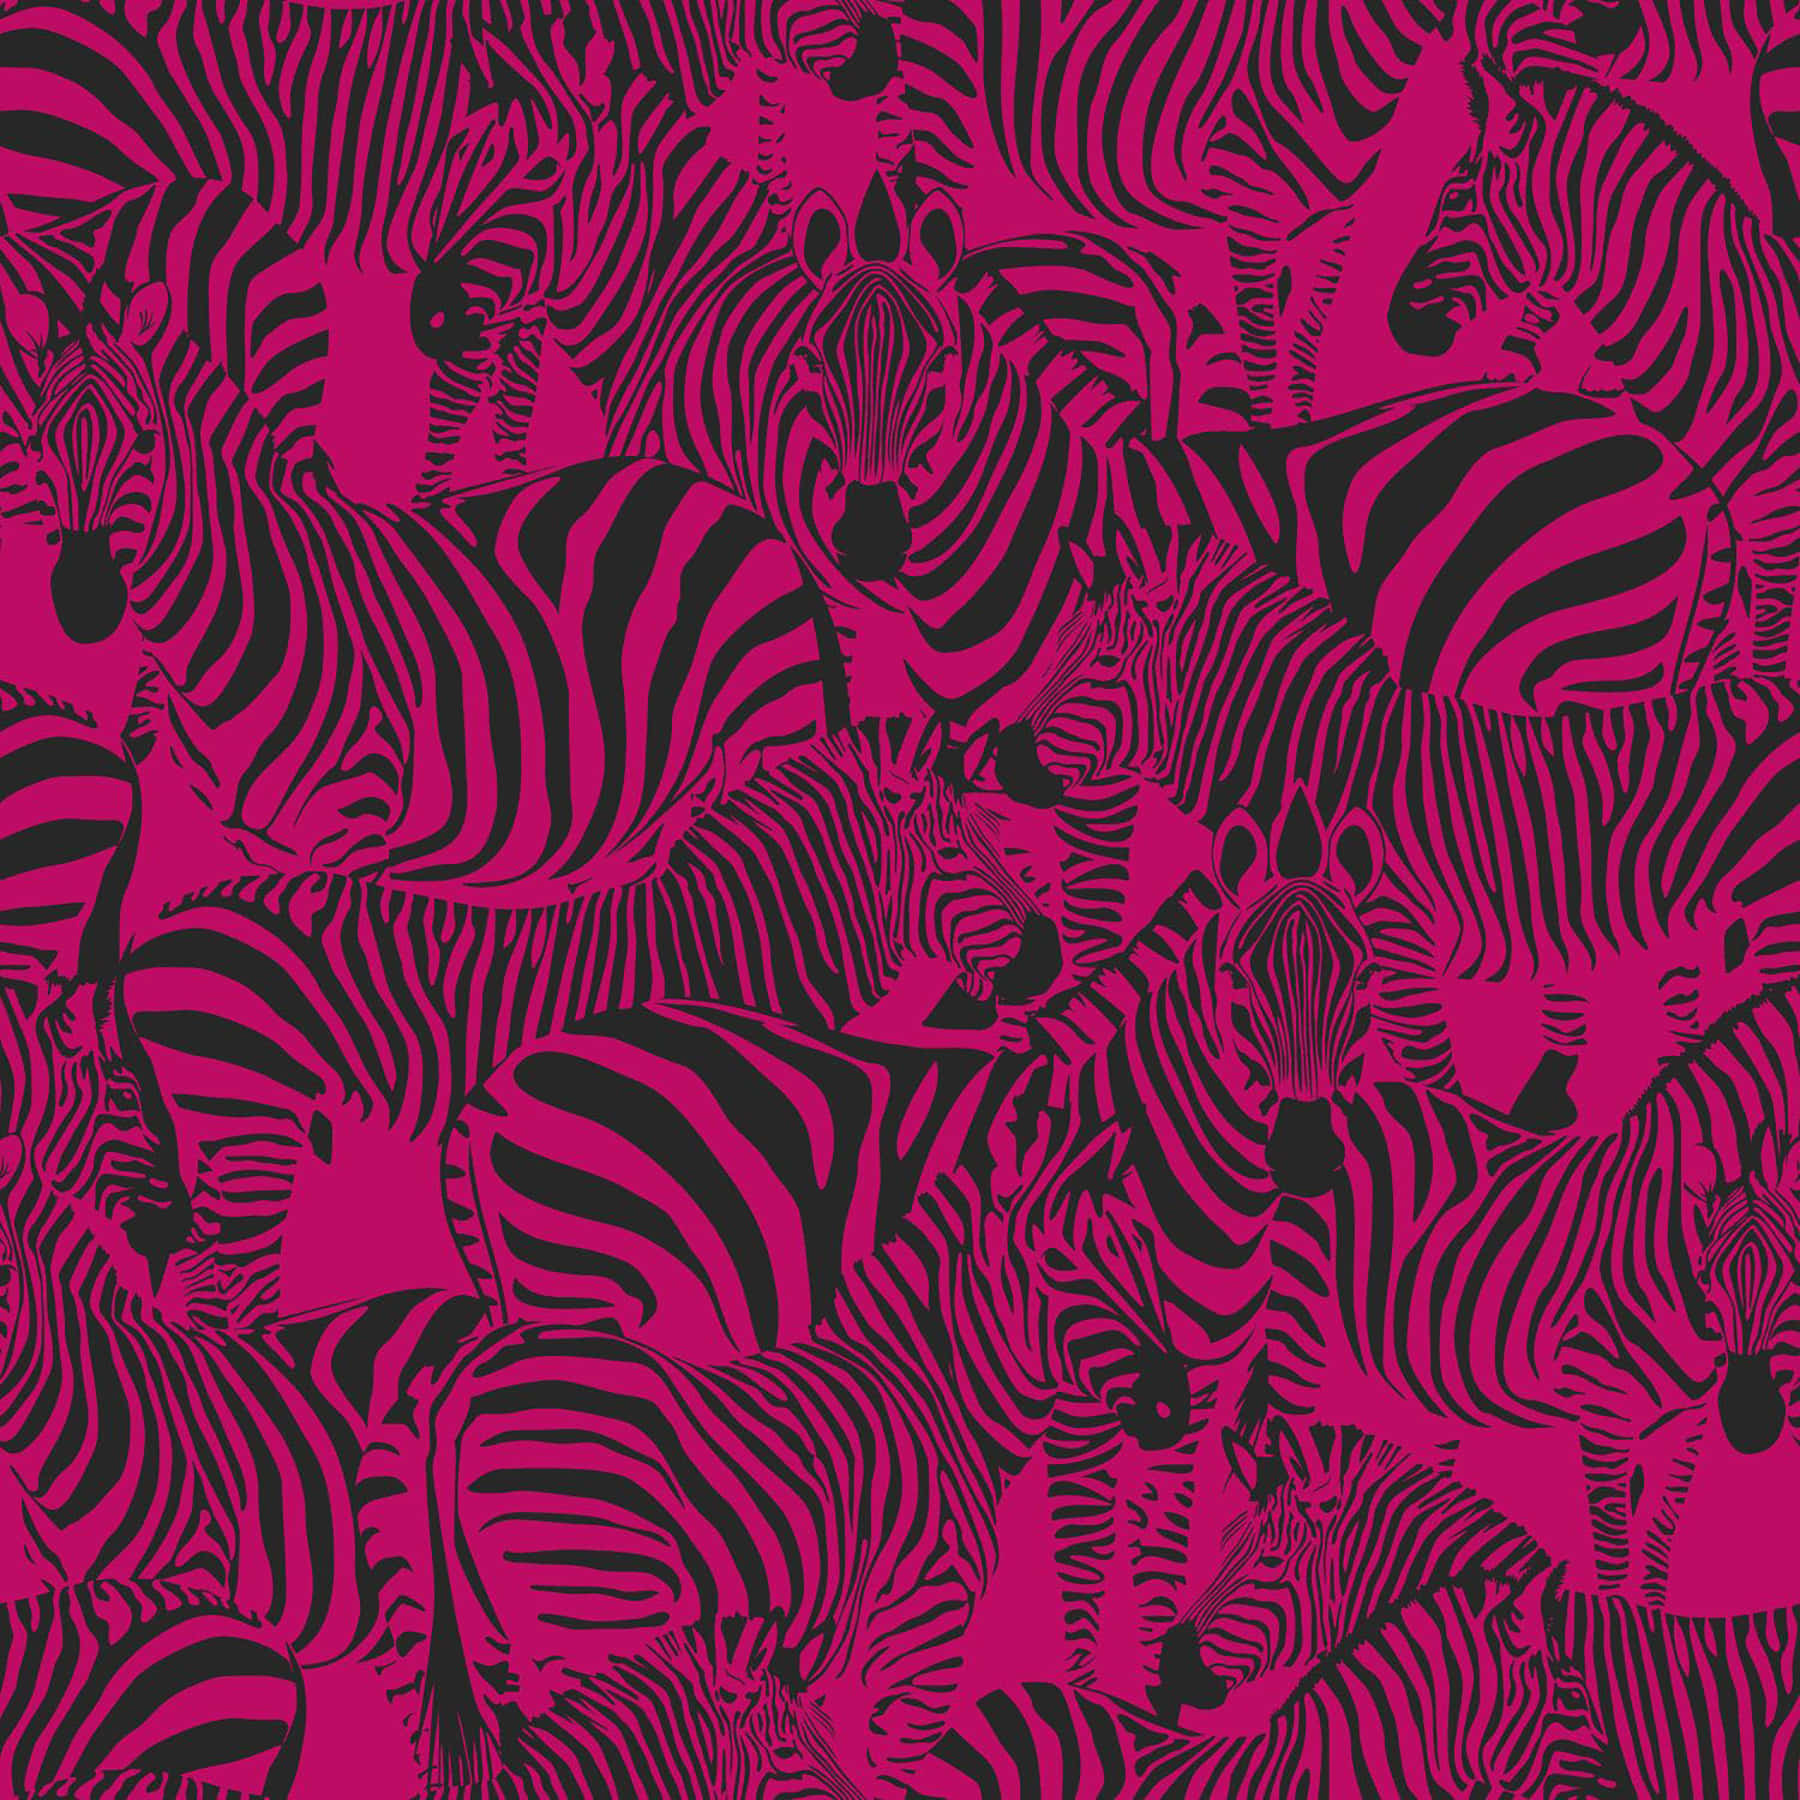 Motivodi Figure Di Animali Zebra Rosa E Nera Sfondo